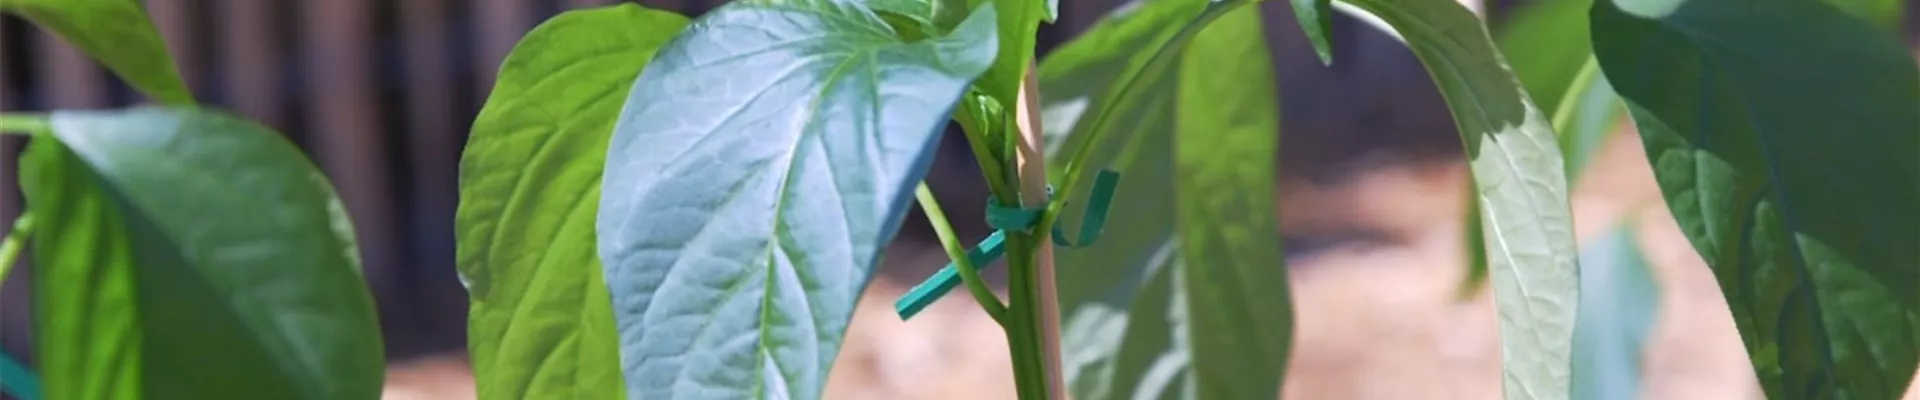 Jalapeno Paprika - Einpflanzen im Gemüsebeet (Thumbnail).jpg